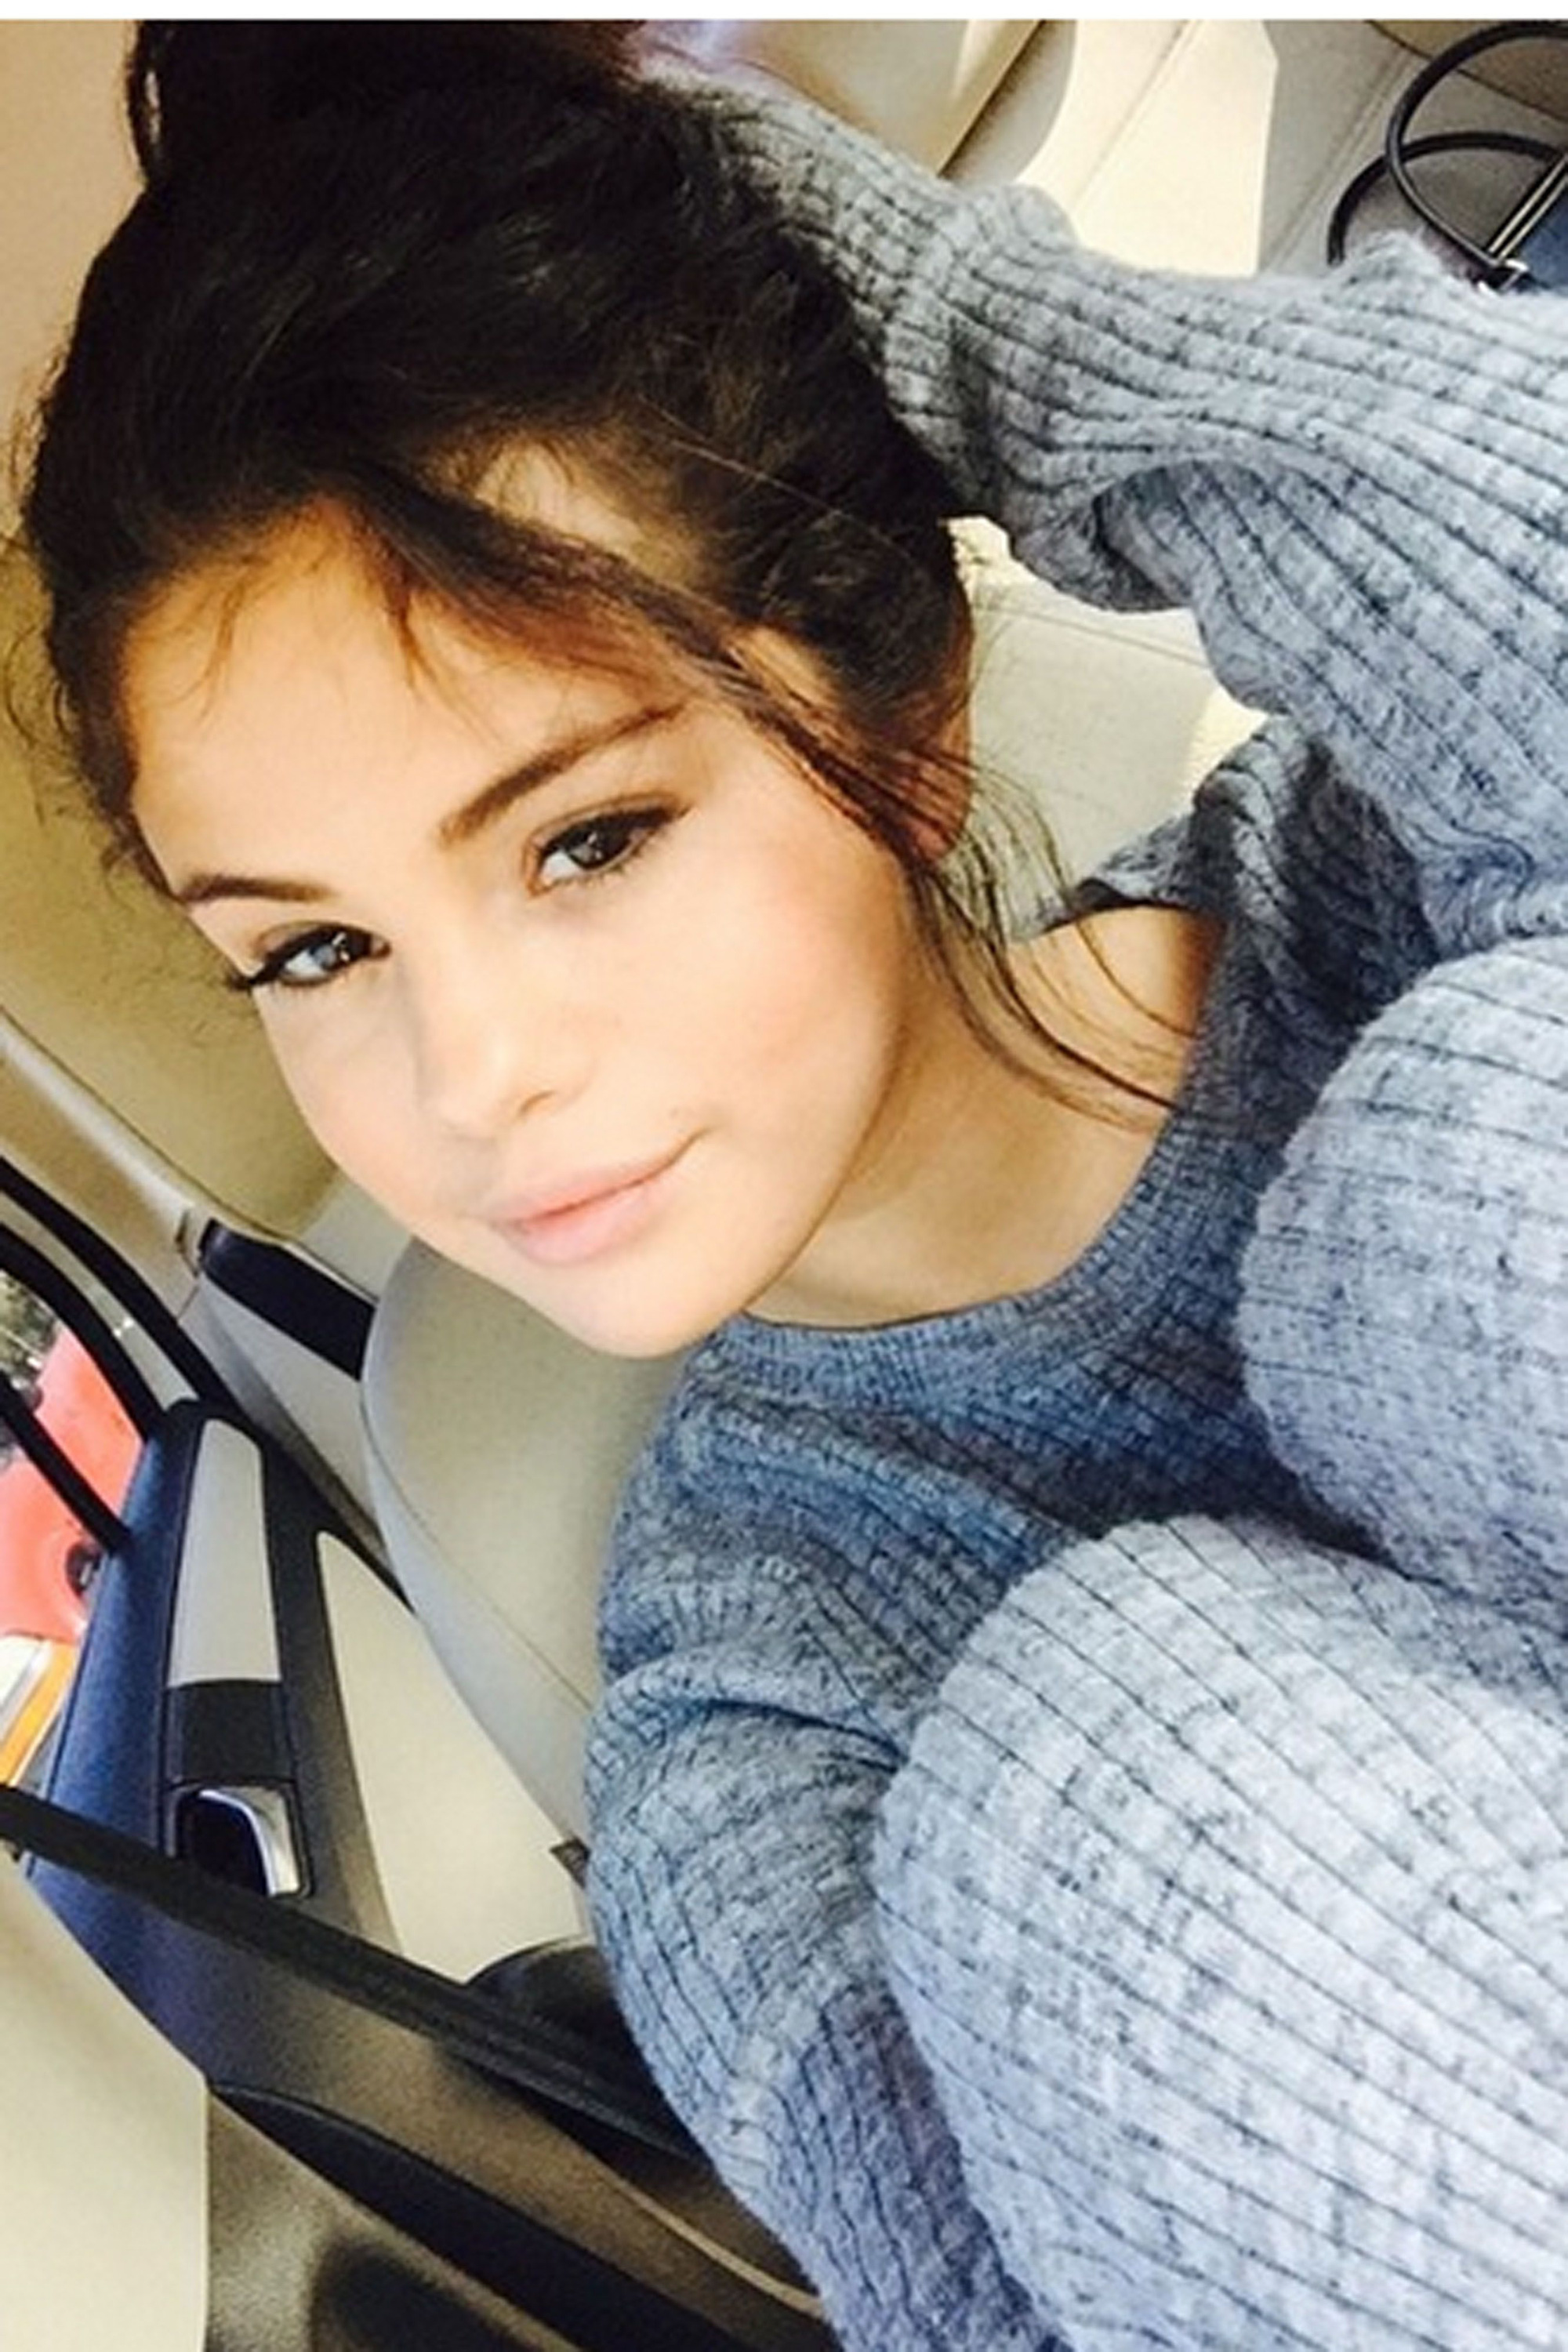 Chị đẹp Selena Gomez từng khiến cả thế giới nín thở vì 1 bức ảnh đã trở lại: Selfie sương sương 30 phút, 2 triệu người nguyện “quỳ rạp” - Ảnh 3.